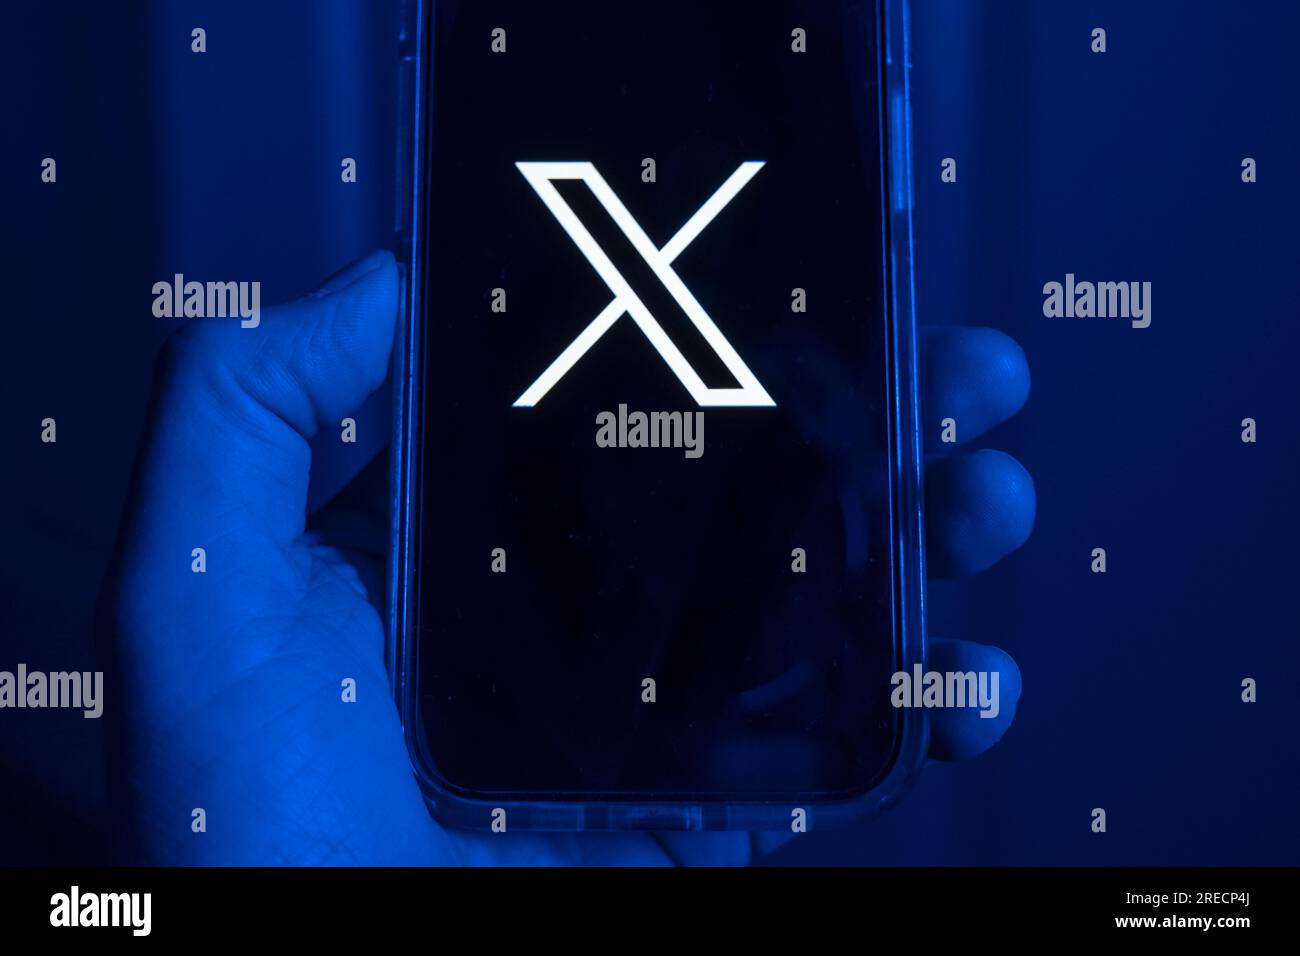 Telefono cellulare in una mano con il simbolo X, il nuovo nome della precedente app Twitter Foto Stock